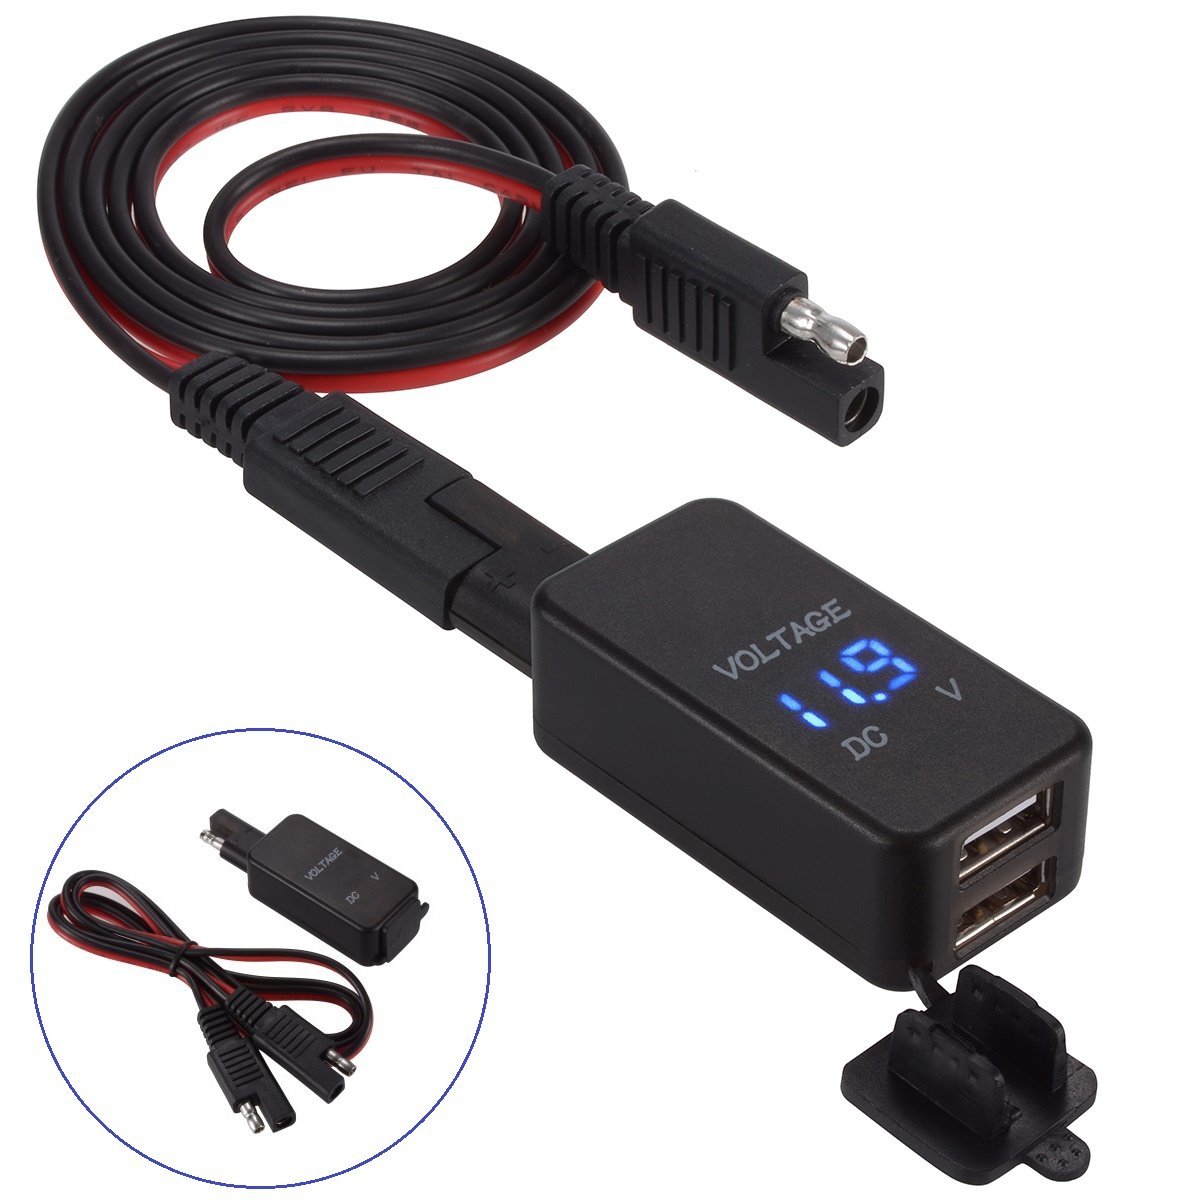 SAE Zu USB Adapter mit Voltmeter Motorrad Schnell Trennen Stecker mit Wasserdicht Dual USB Ladegerät für Smartphone Tablette GPS